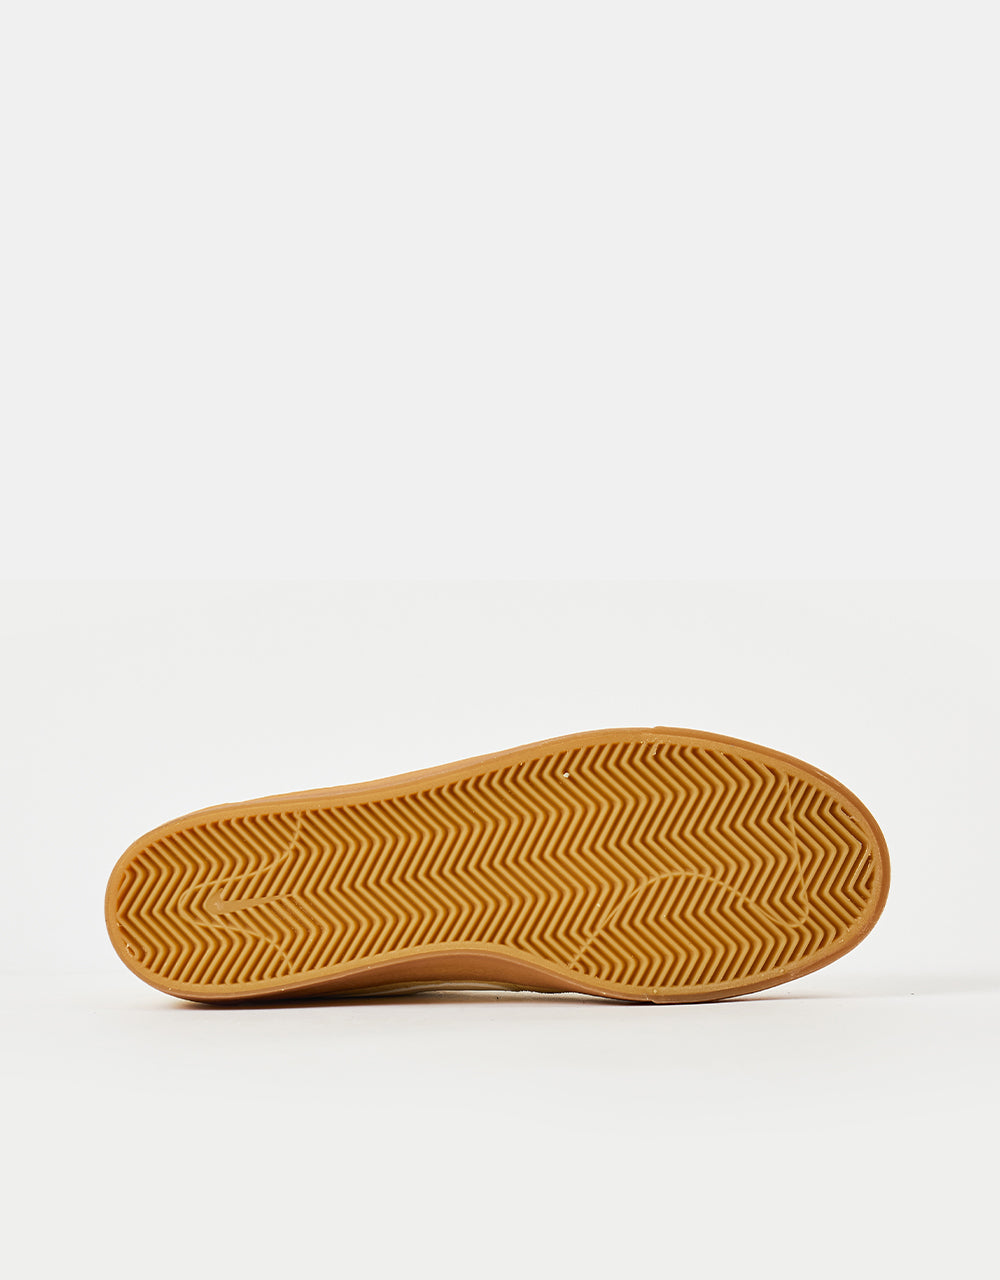 Nike SB Bruin High Skate Shoes - Lemon Wash/Sail-Lemon Wash